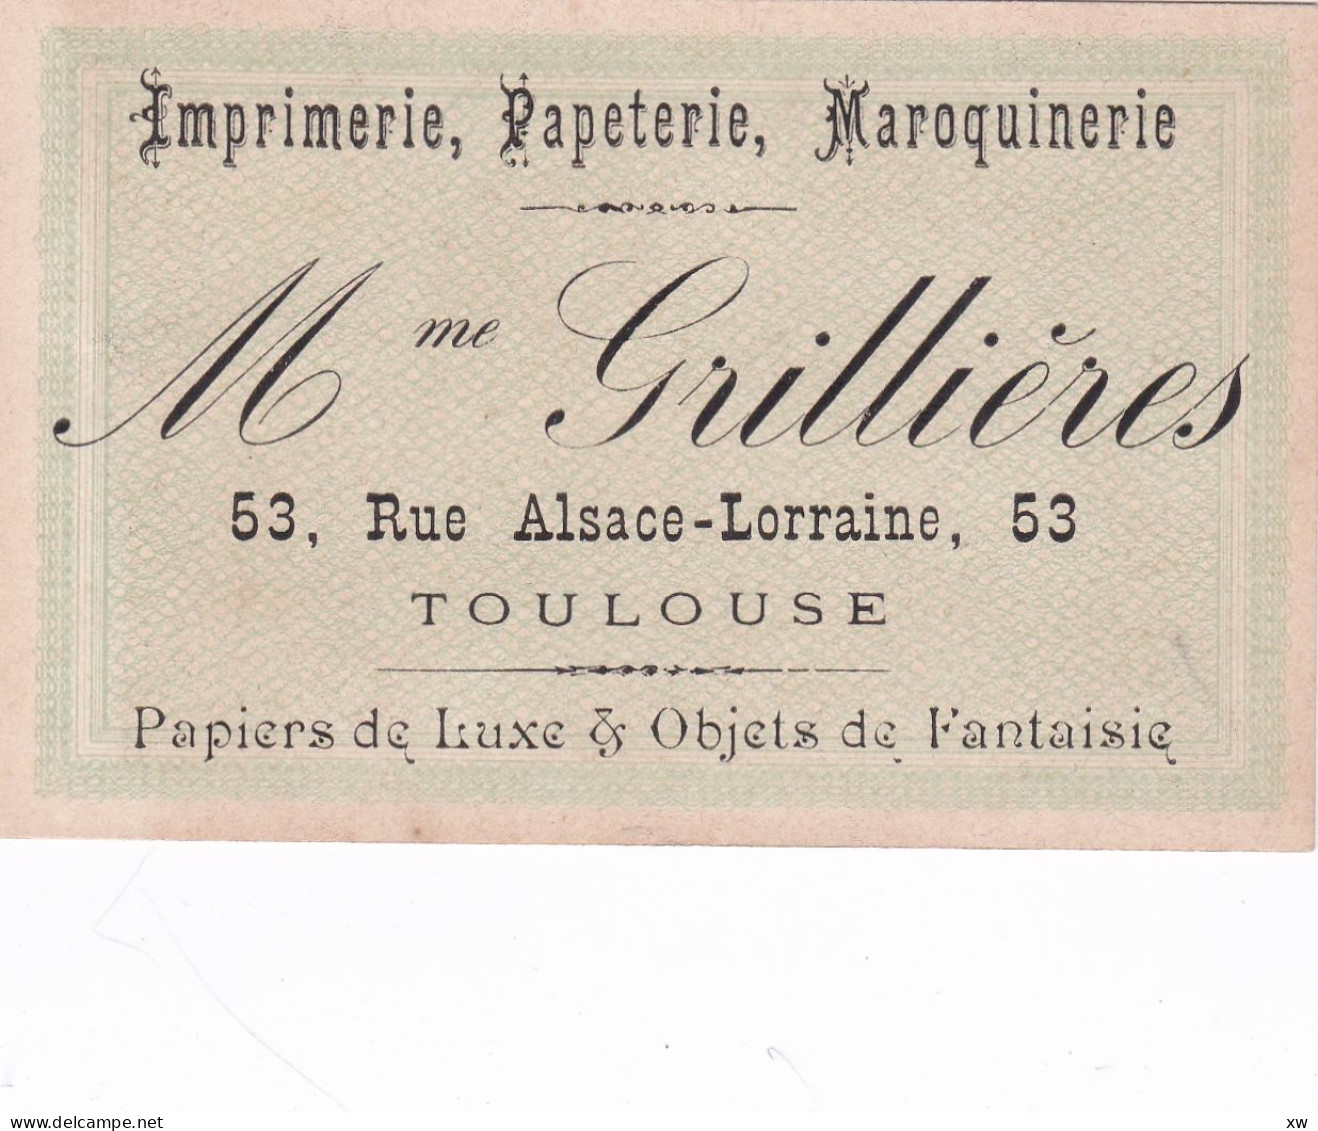 TOULOUSE -31- CARTE DE VISITE - Imprimerie, Papeterie; Maroquinerie - Mme GRILLIERES 53; Rue Alsace-Lorraine - 16-05-24 - Visitekaartjes